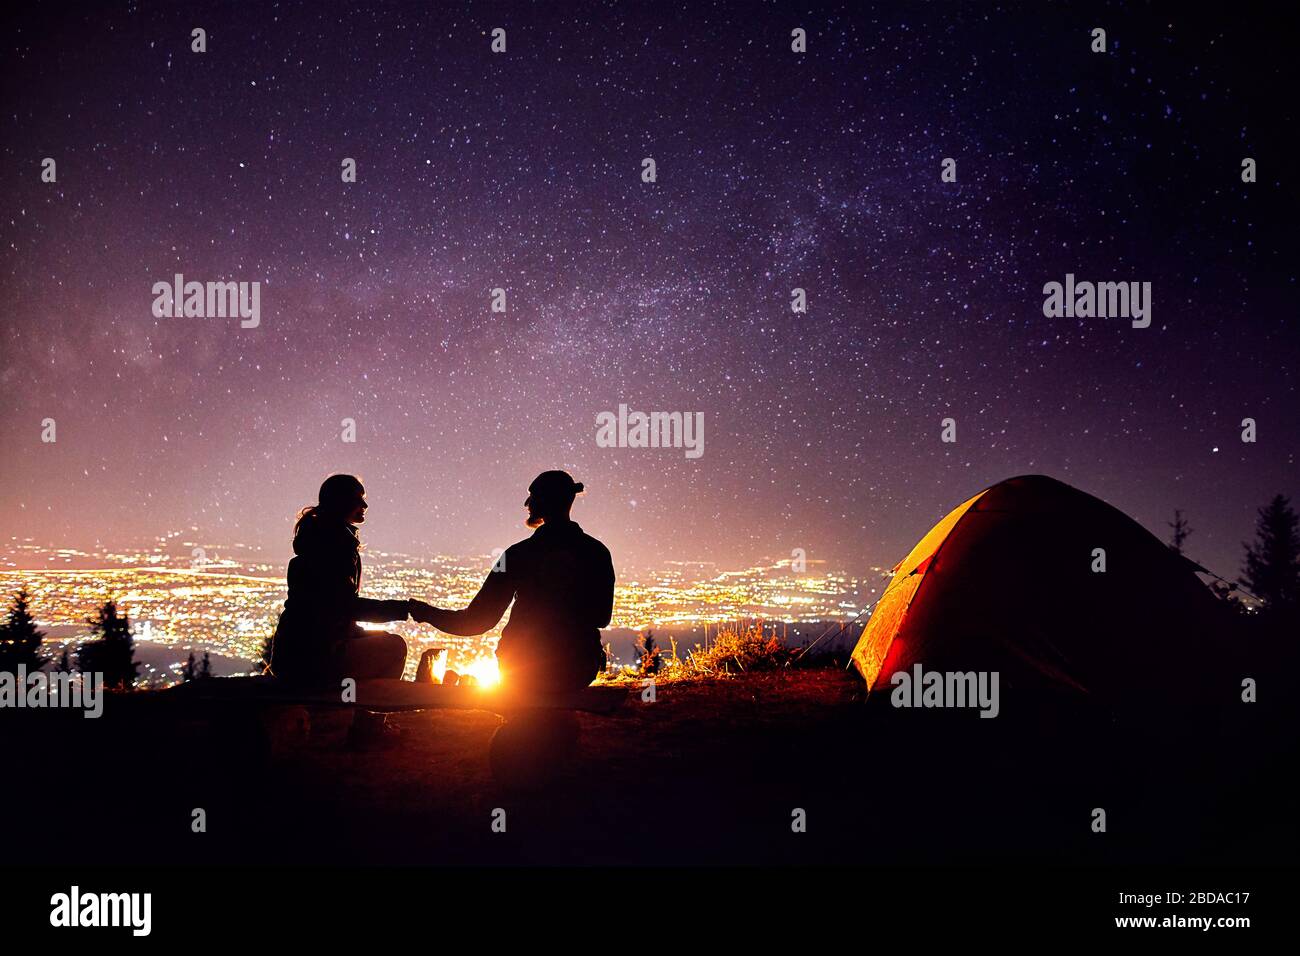 Coppia felice in silhouette seduto vicino al fuoco e tenda arancione. Cielo notturno con via lattea stelle e luci della città a sfondo. Foto Stock